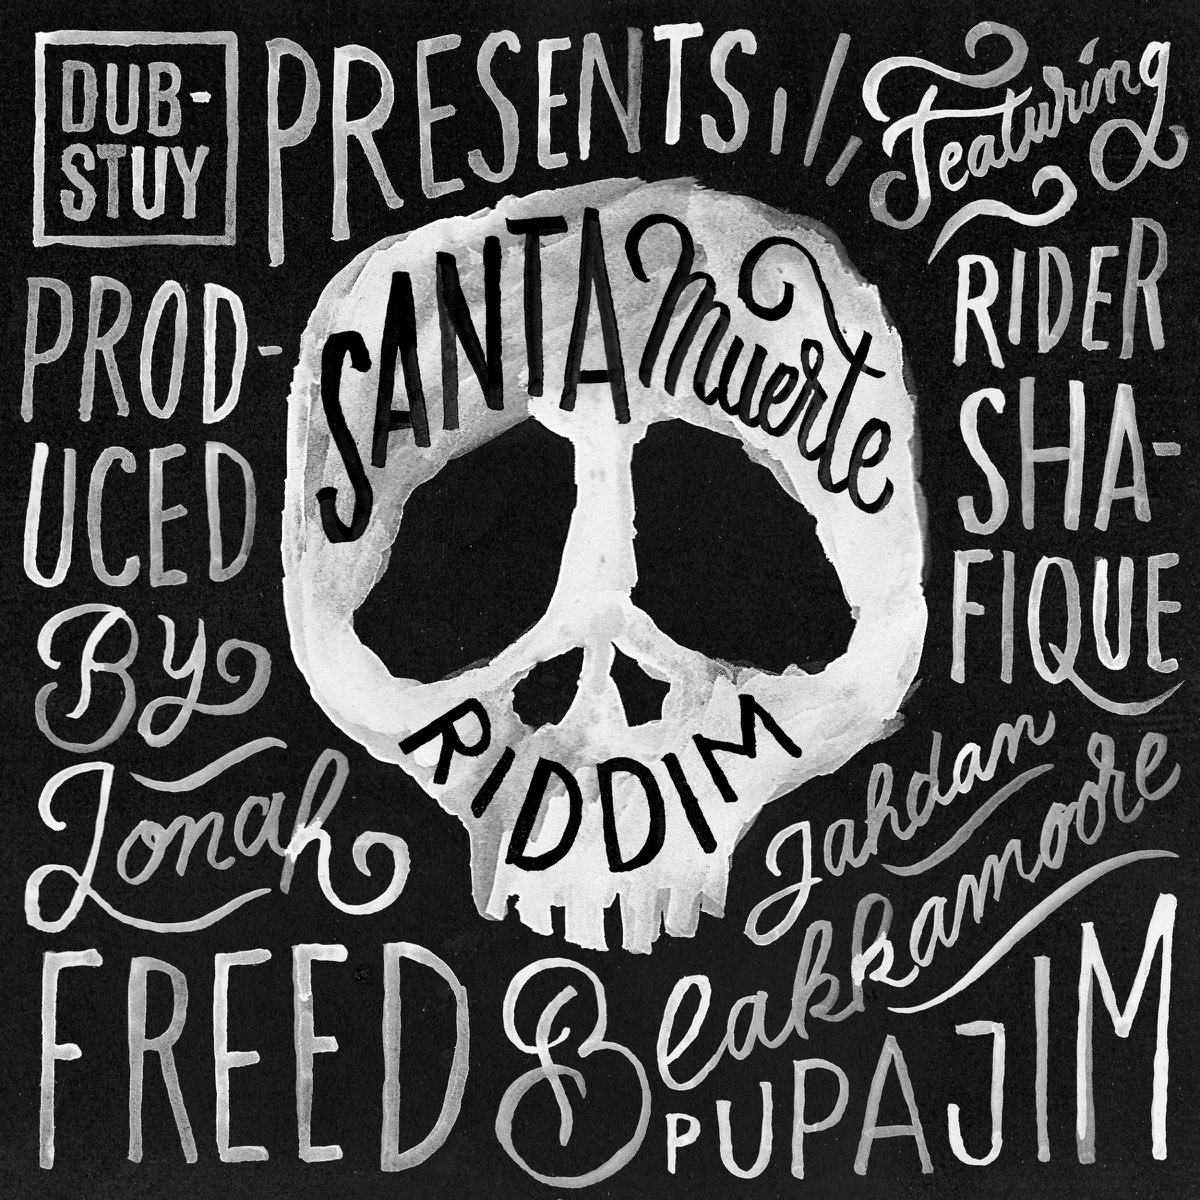 Santa Muerte Riddim - EP by Dub-Stuy on Apple Music